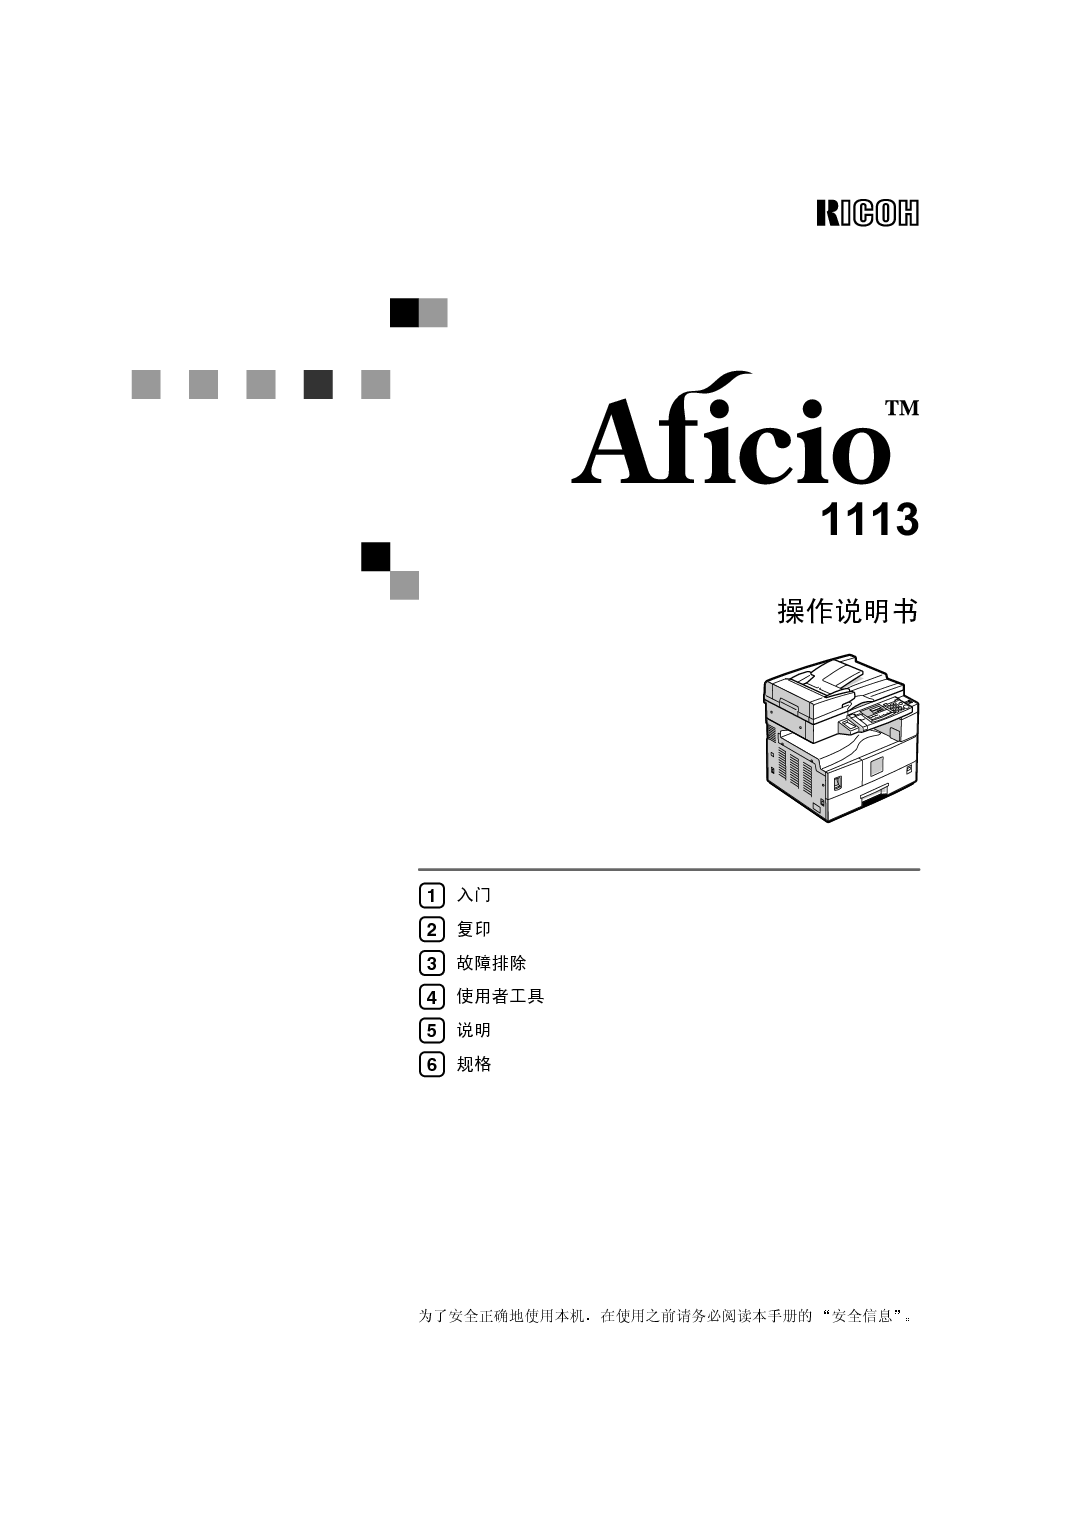 理光 Ricoh Aficio 1113 使用手册 封面